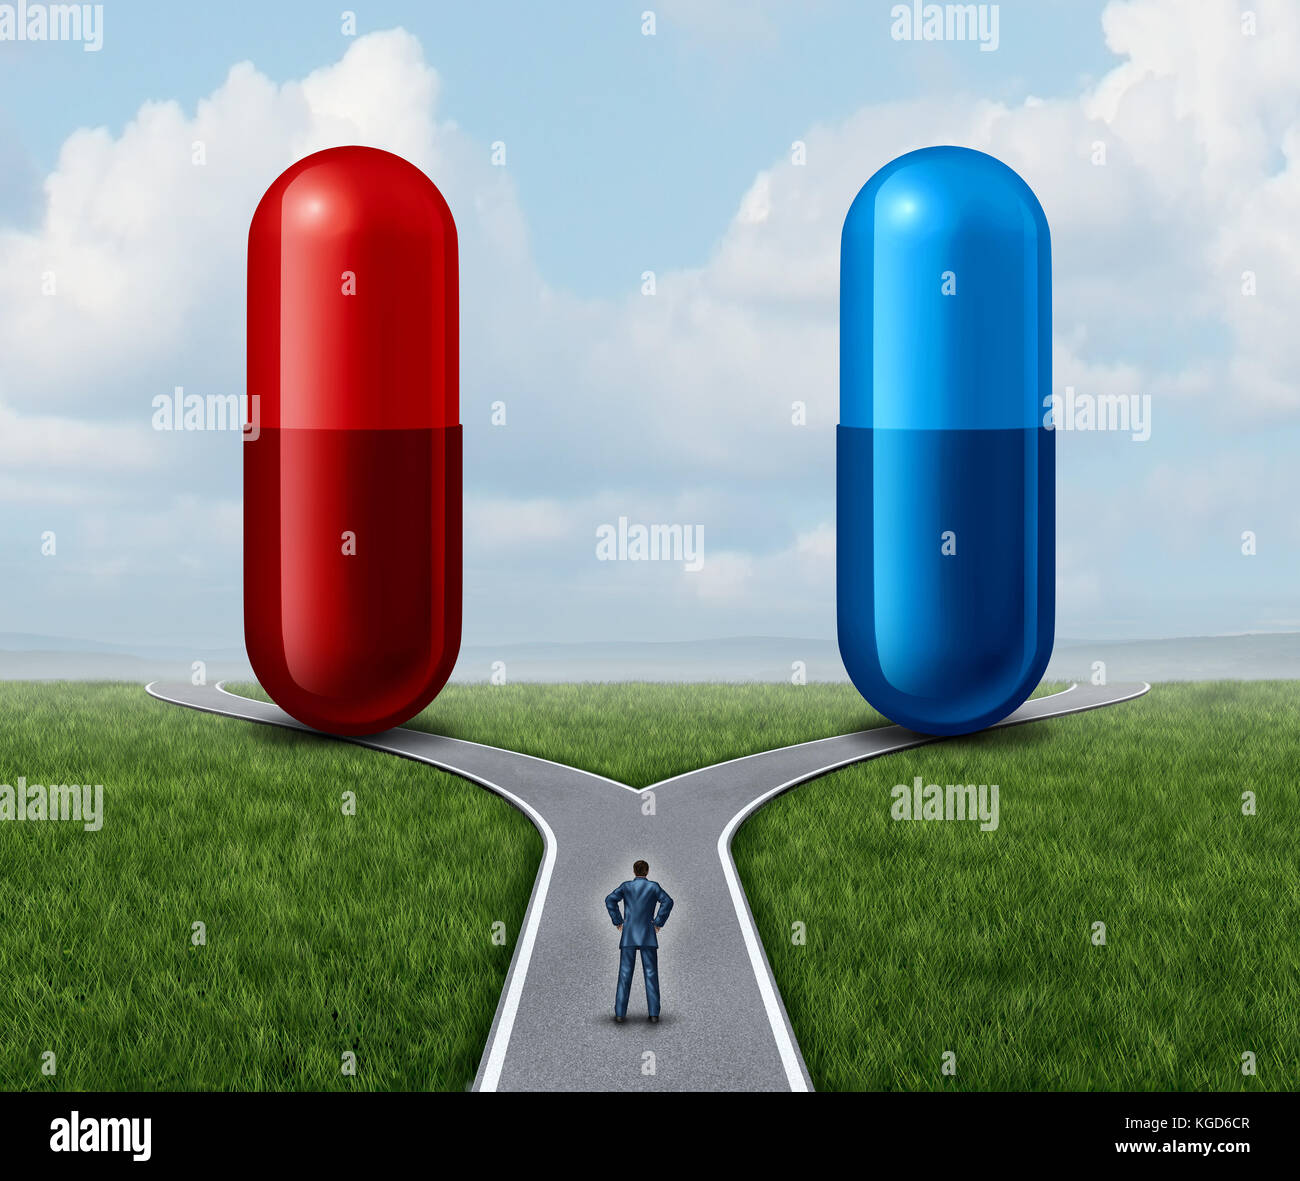 Pilule rouge et bleu choix comme une personne à un carrefour à la médication à capsules en tant que symbole de choisir entre la vérité et l'illusion. Banque D'Images